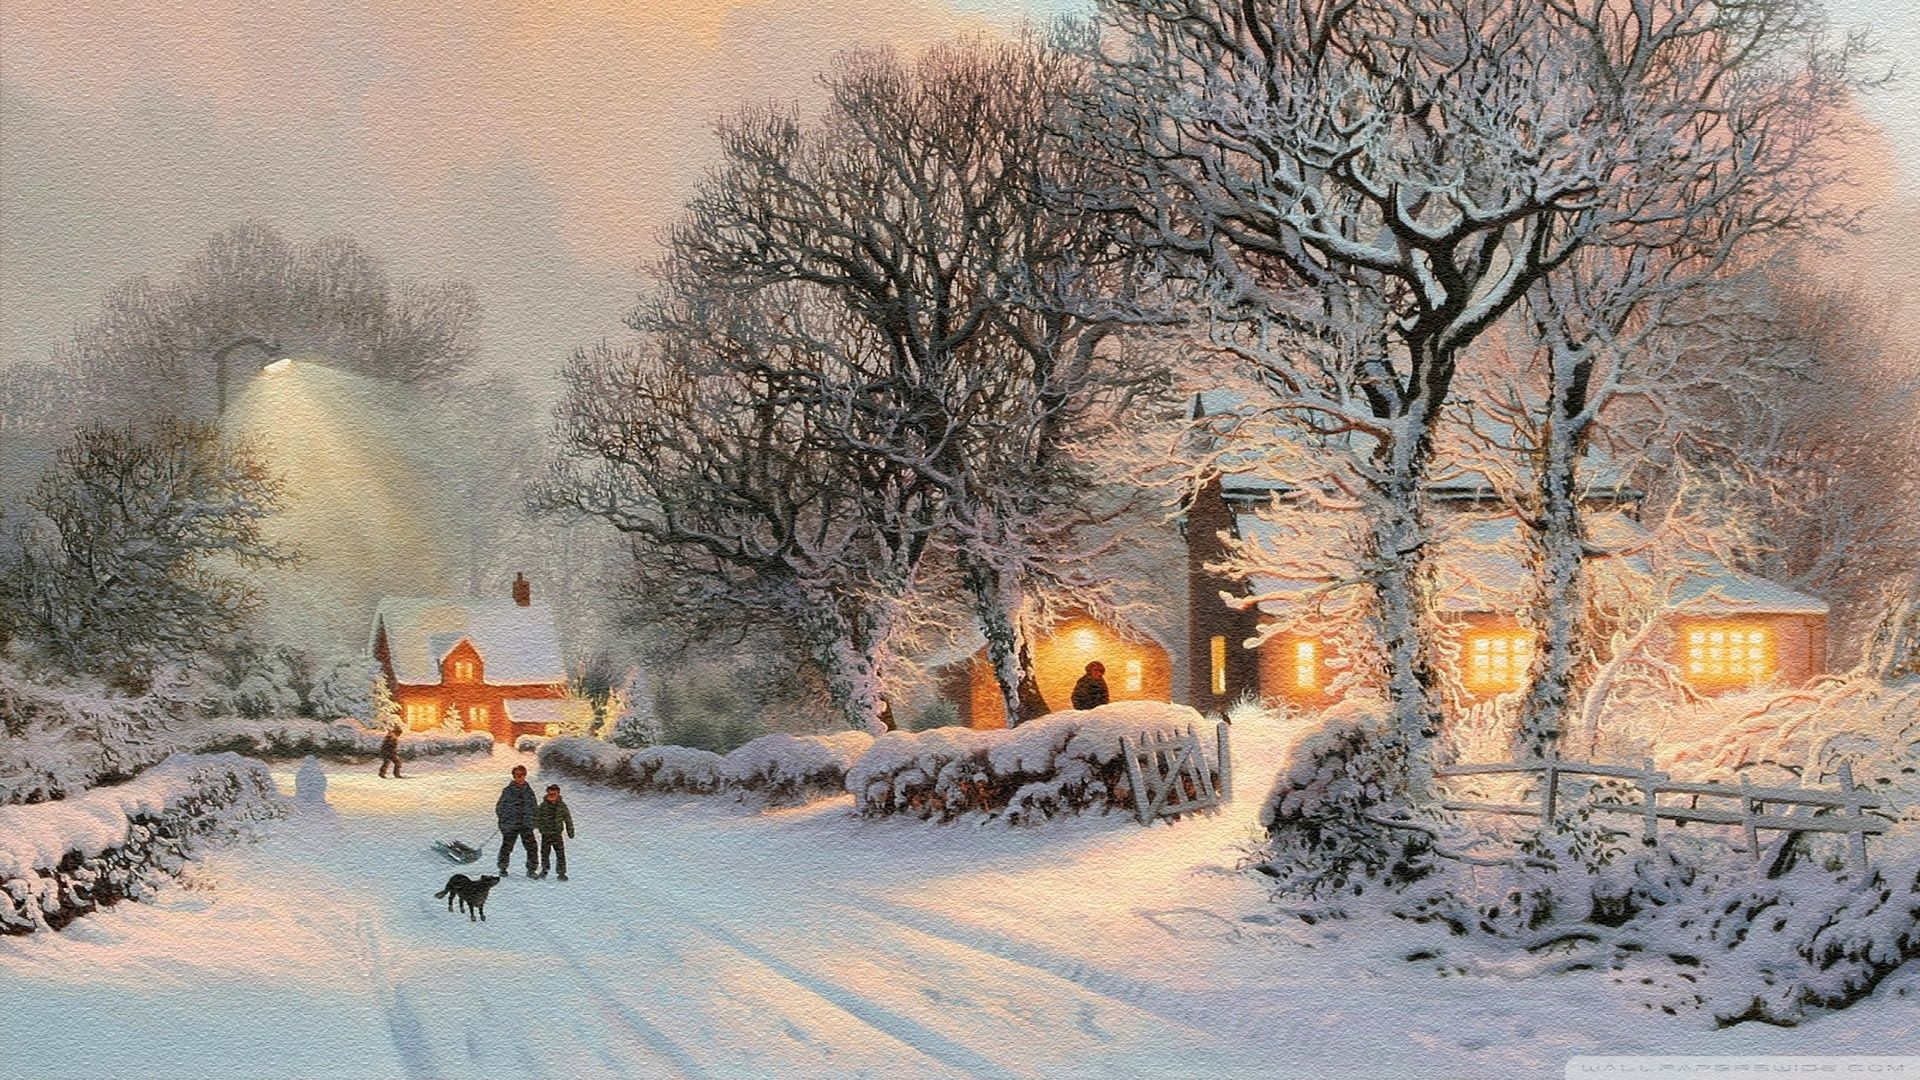 1920x1080 Winter Village Scenes Wallpapers Top Free Winter Village Scenes Backgrounds